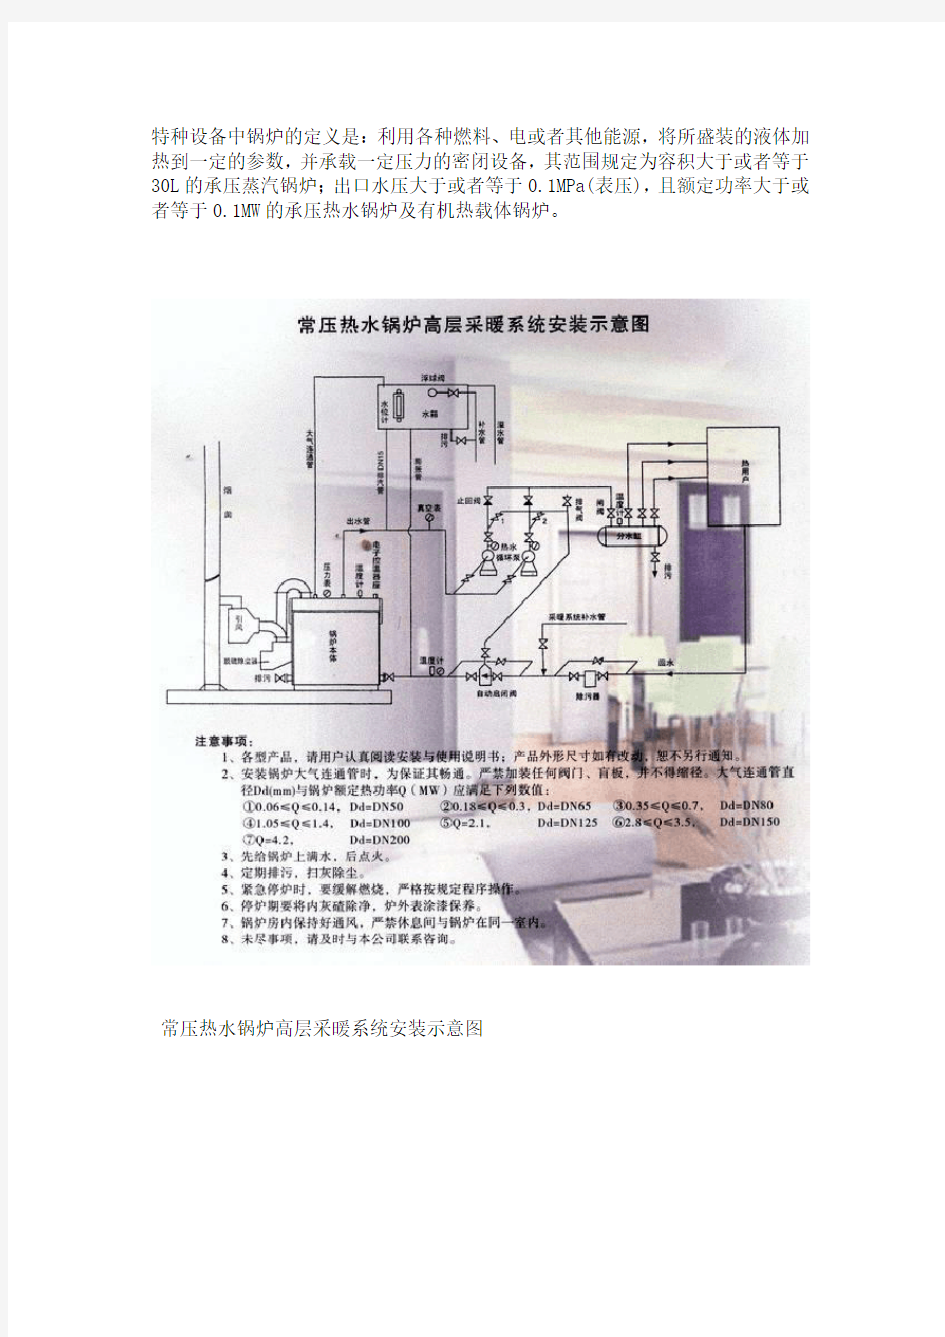 常压热水锅炉安装系统图